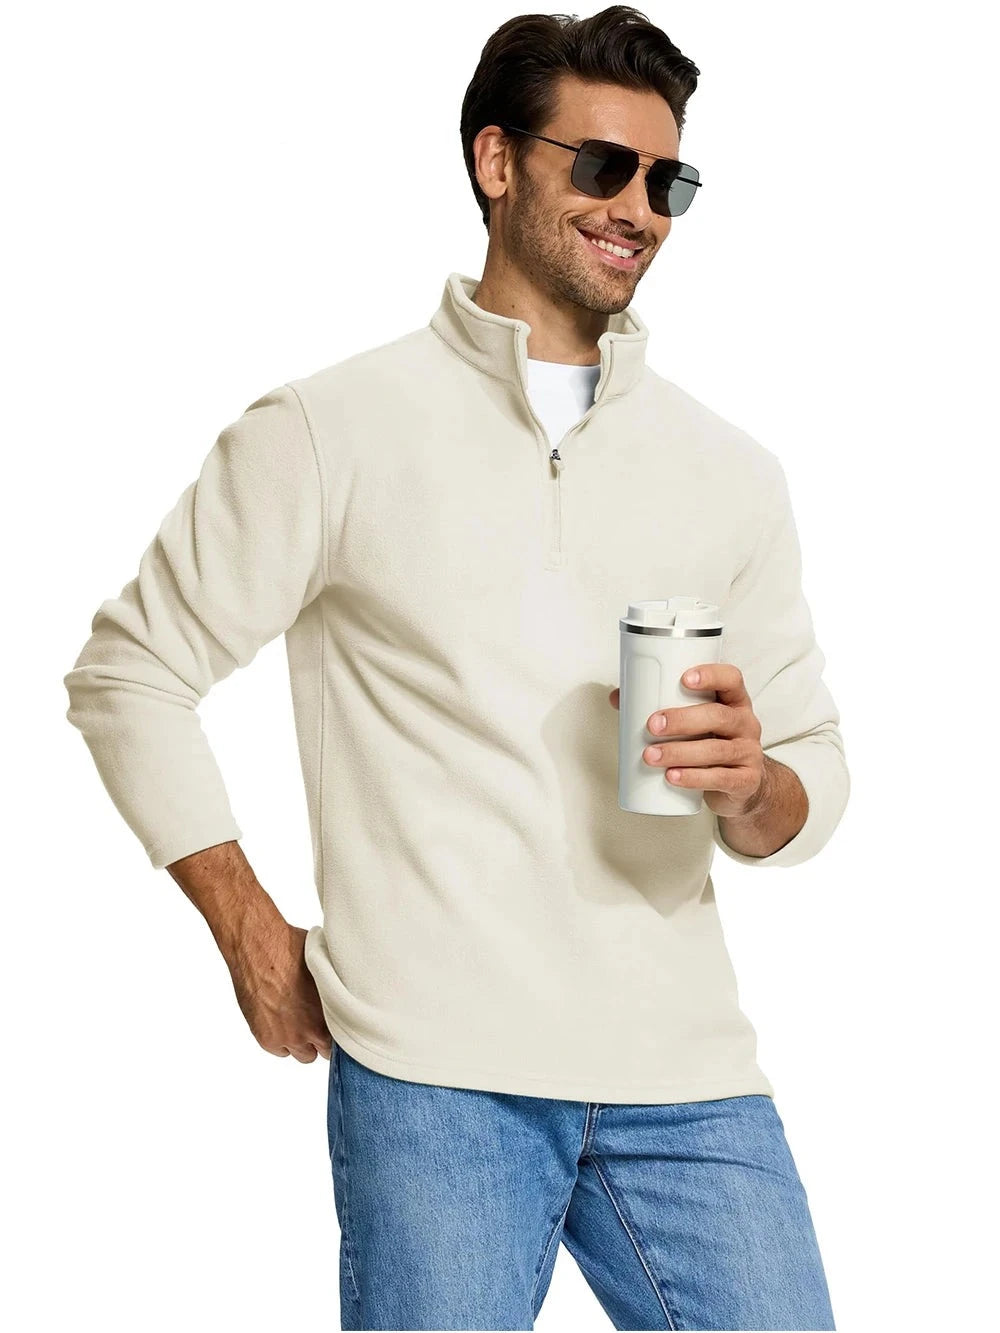 TACVASEN Quarter-Zip Pullover Tops Men